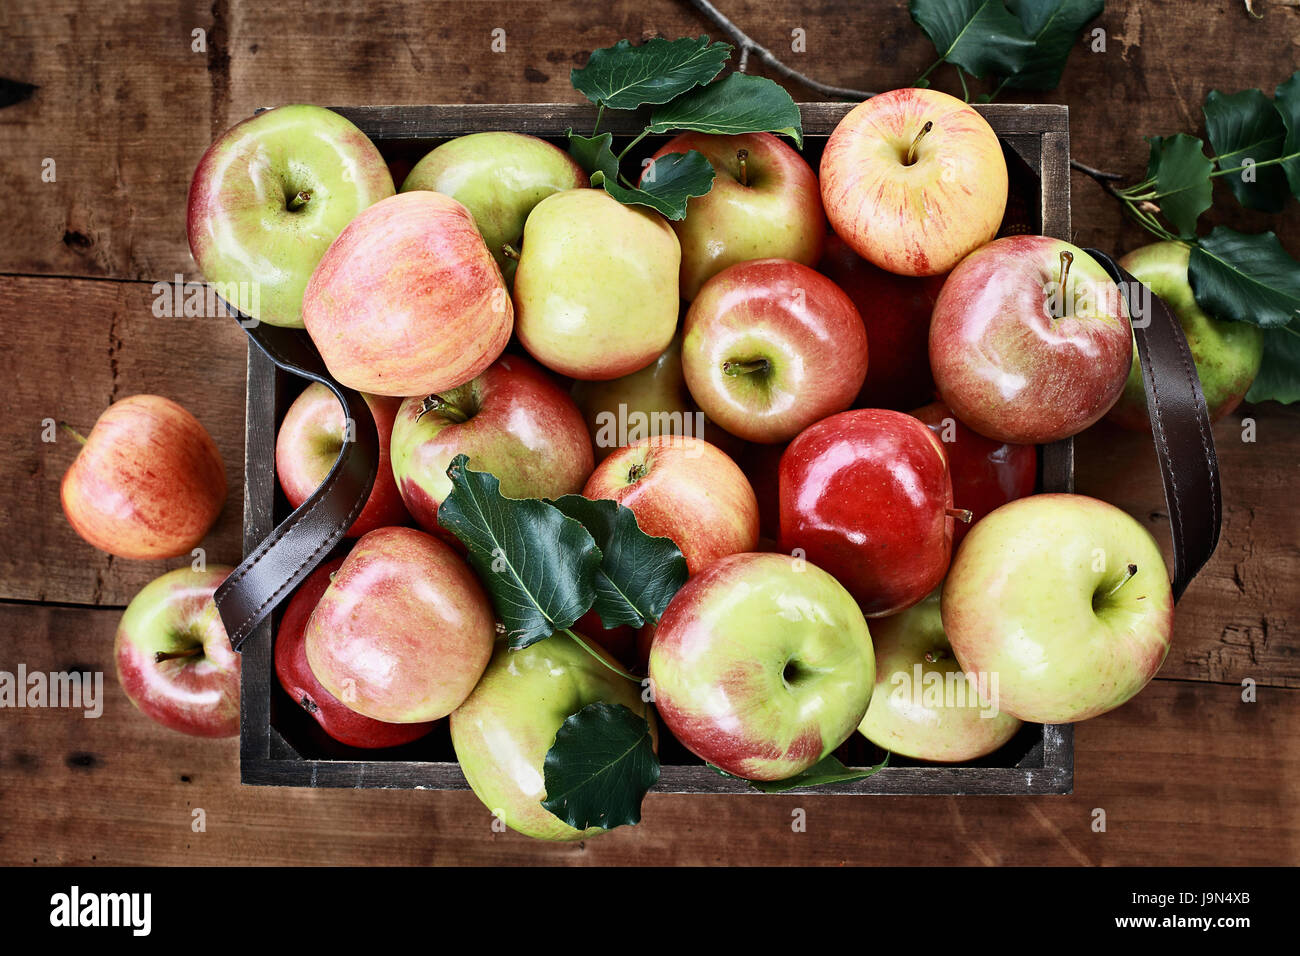 Appena raccolto staio di mele in un vecchio vintage gabbia in legno con maniglie in pelle su una tavola in legno rustico. Immagine ripresa dal di sopra. Foto Stock